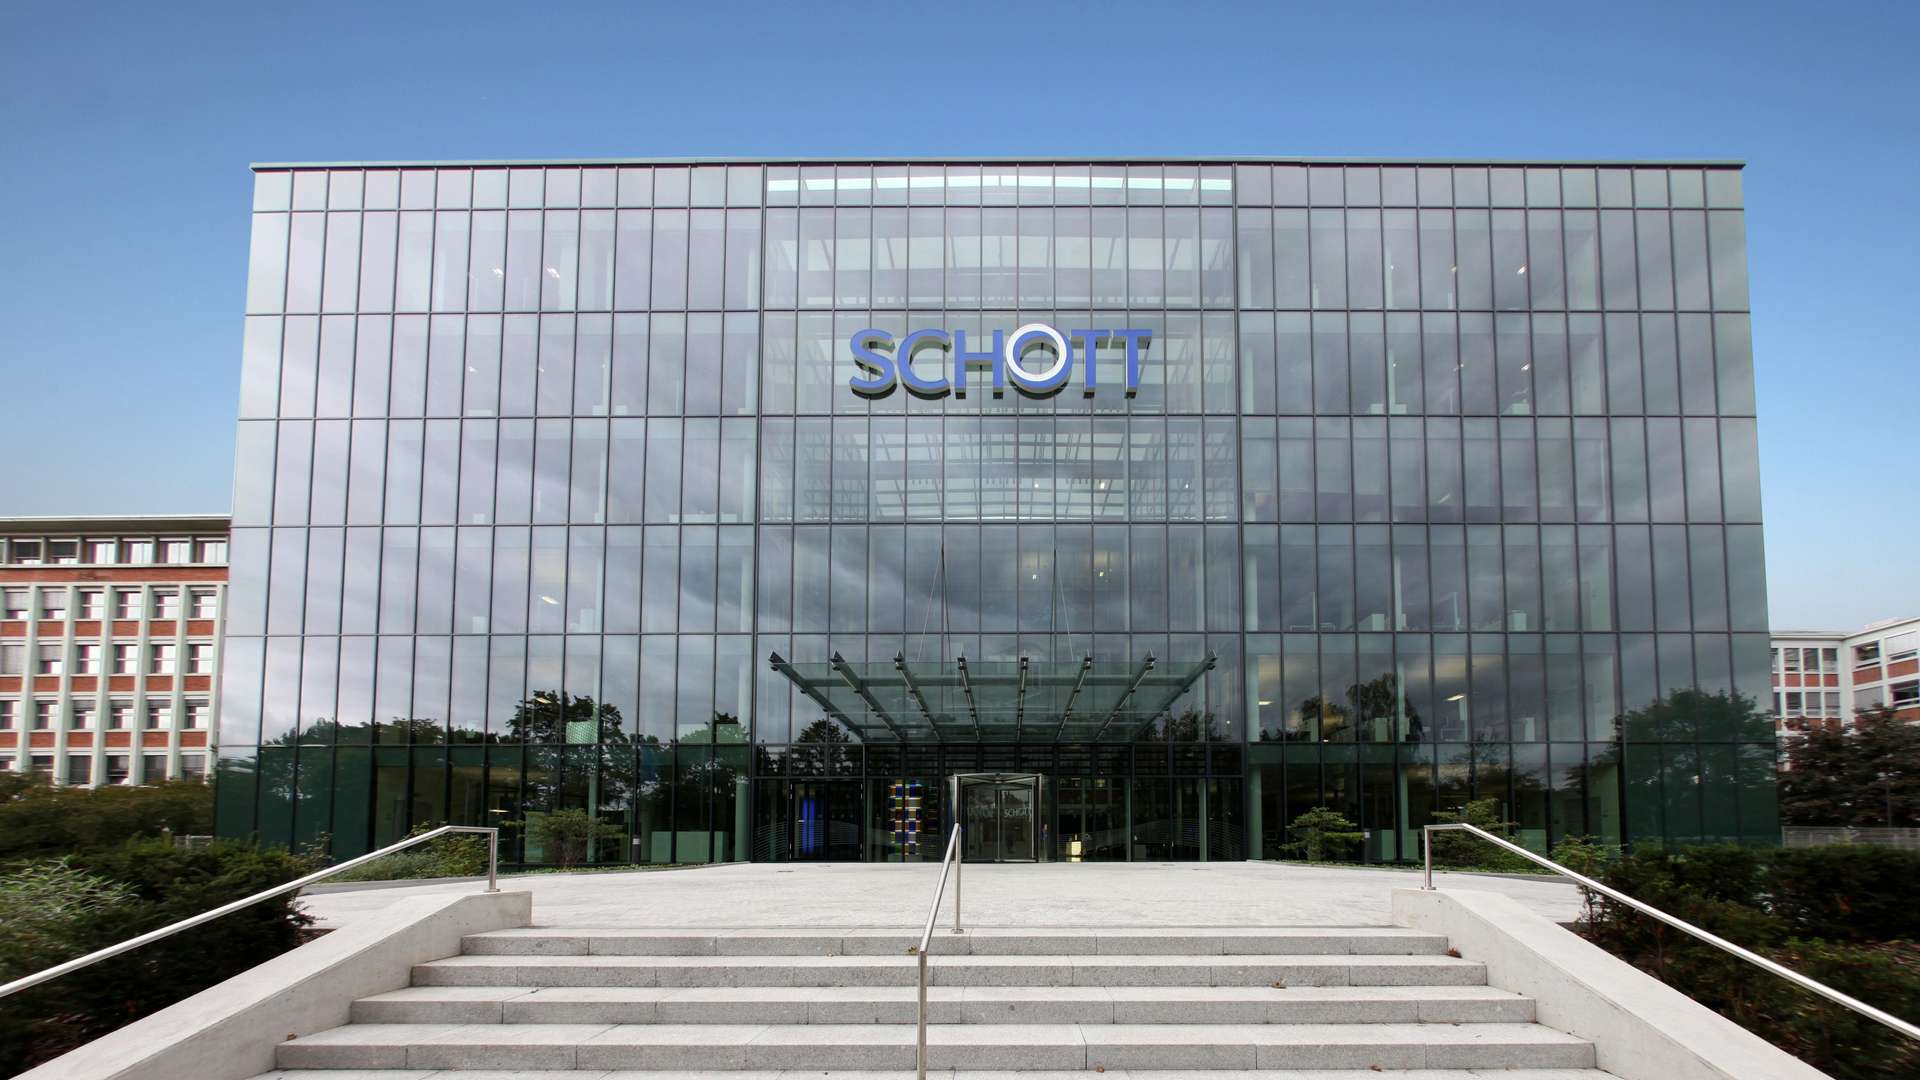 SCHOTT corporate headquarter building